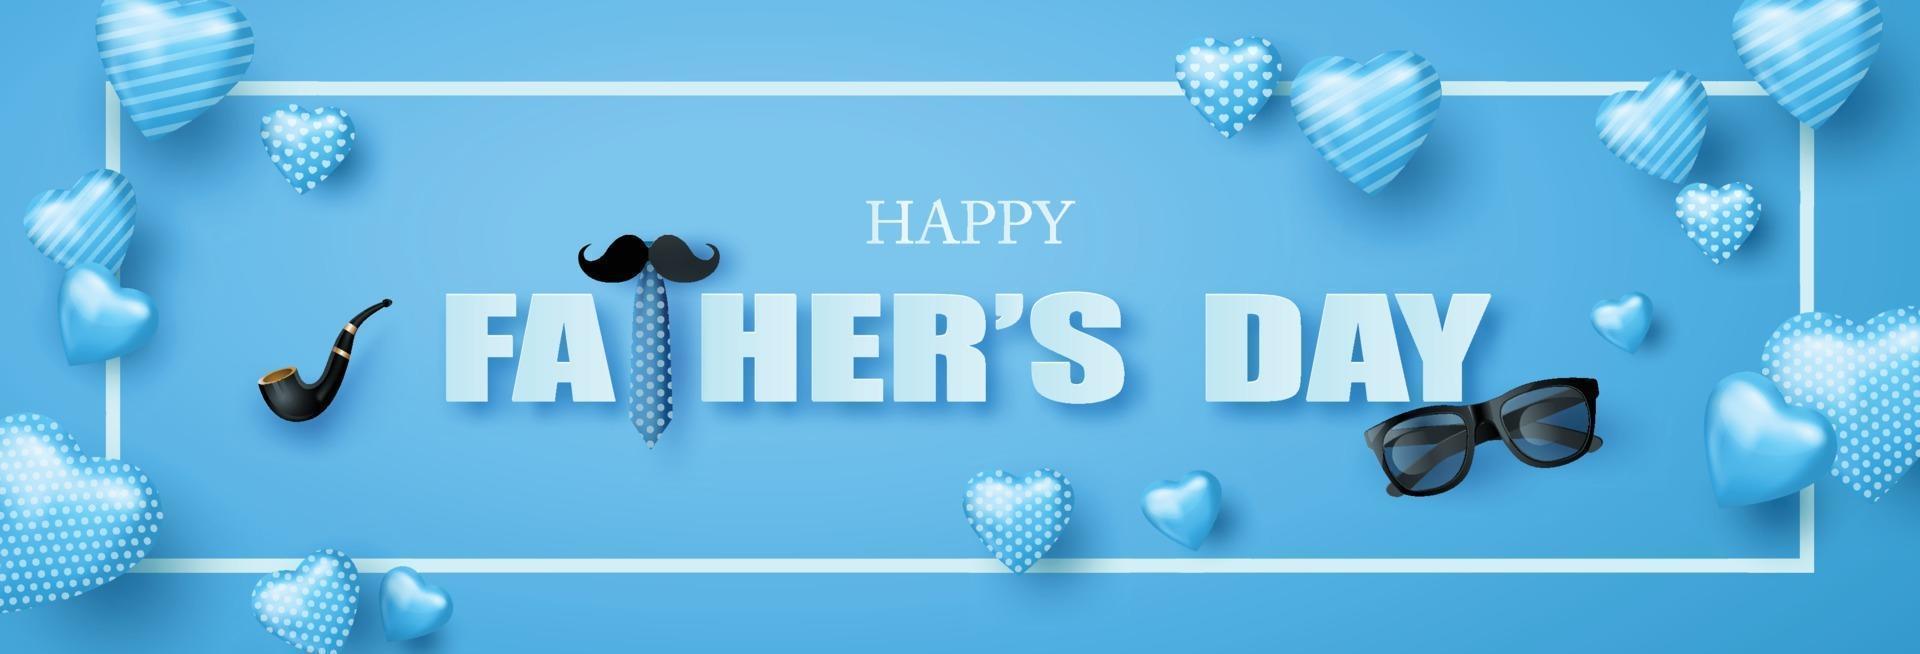 cartão feliz dia dos pais com bigode, gravata e óculos estilo corte de papel vetor